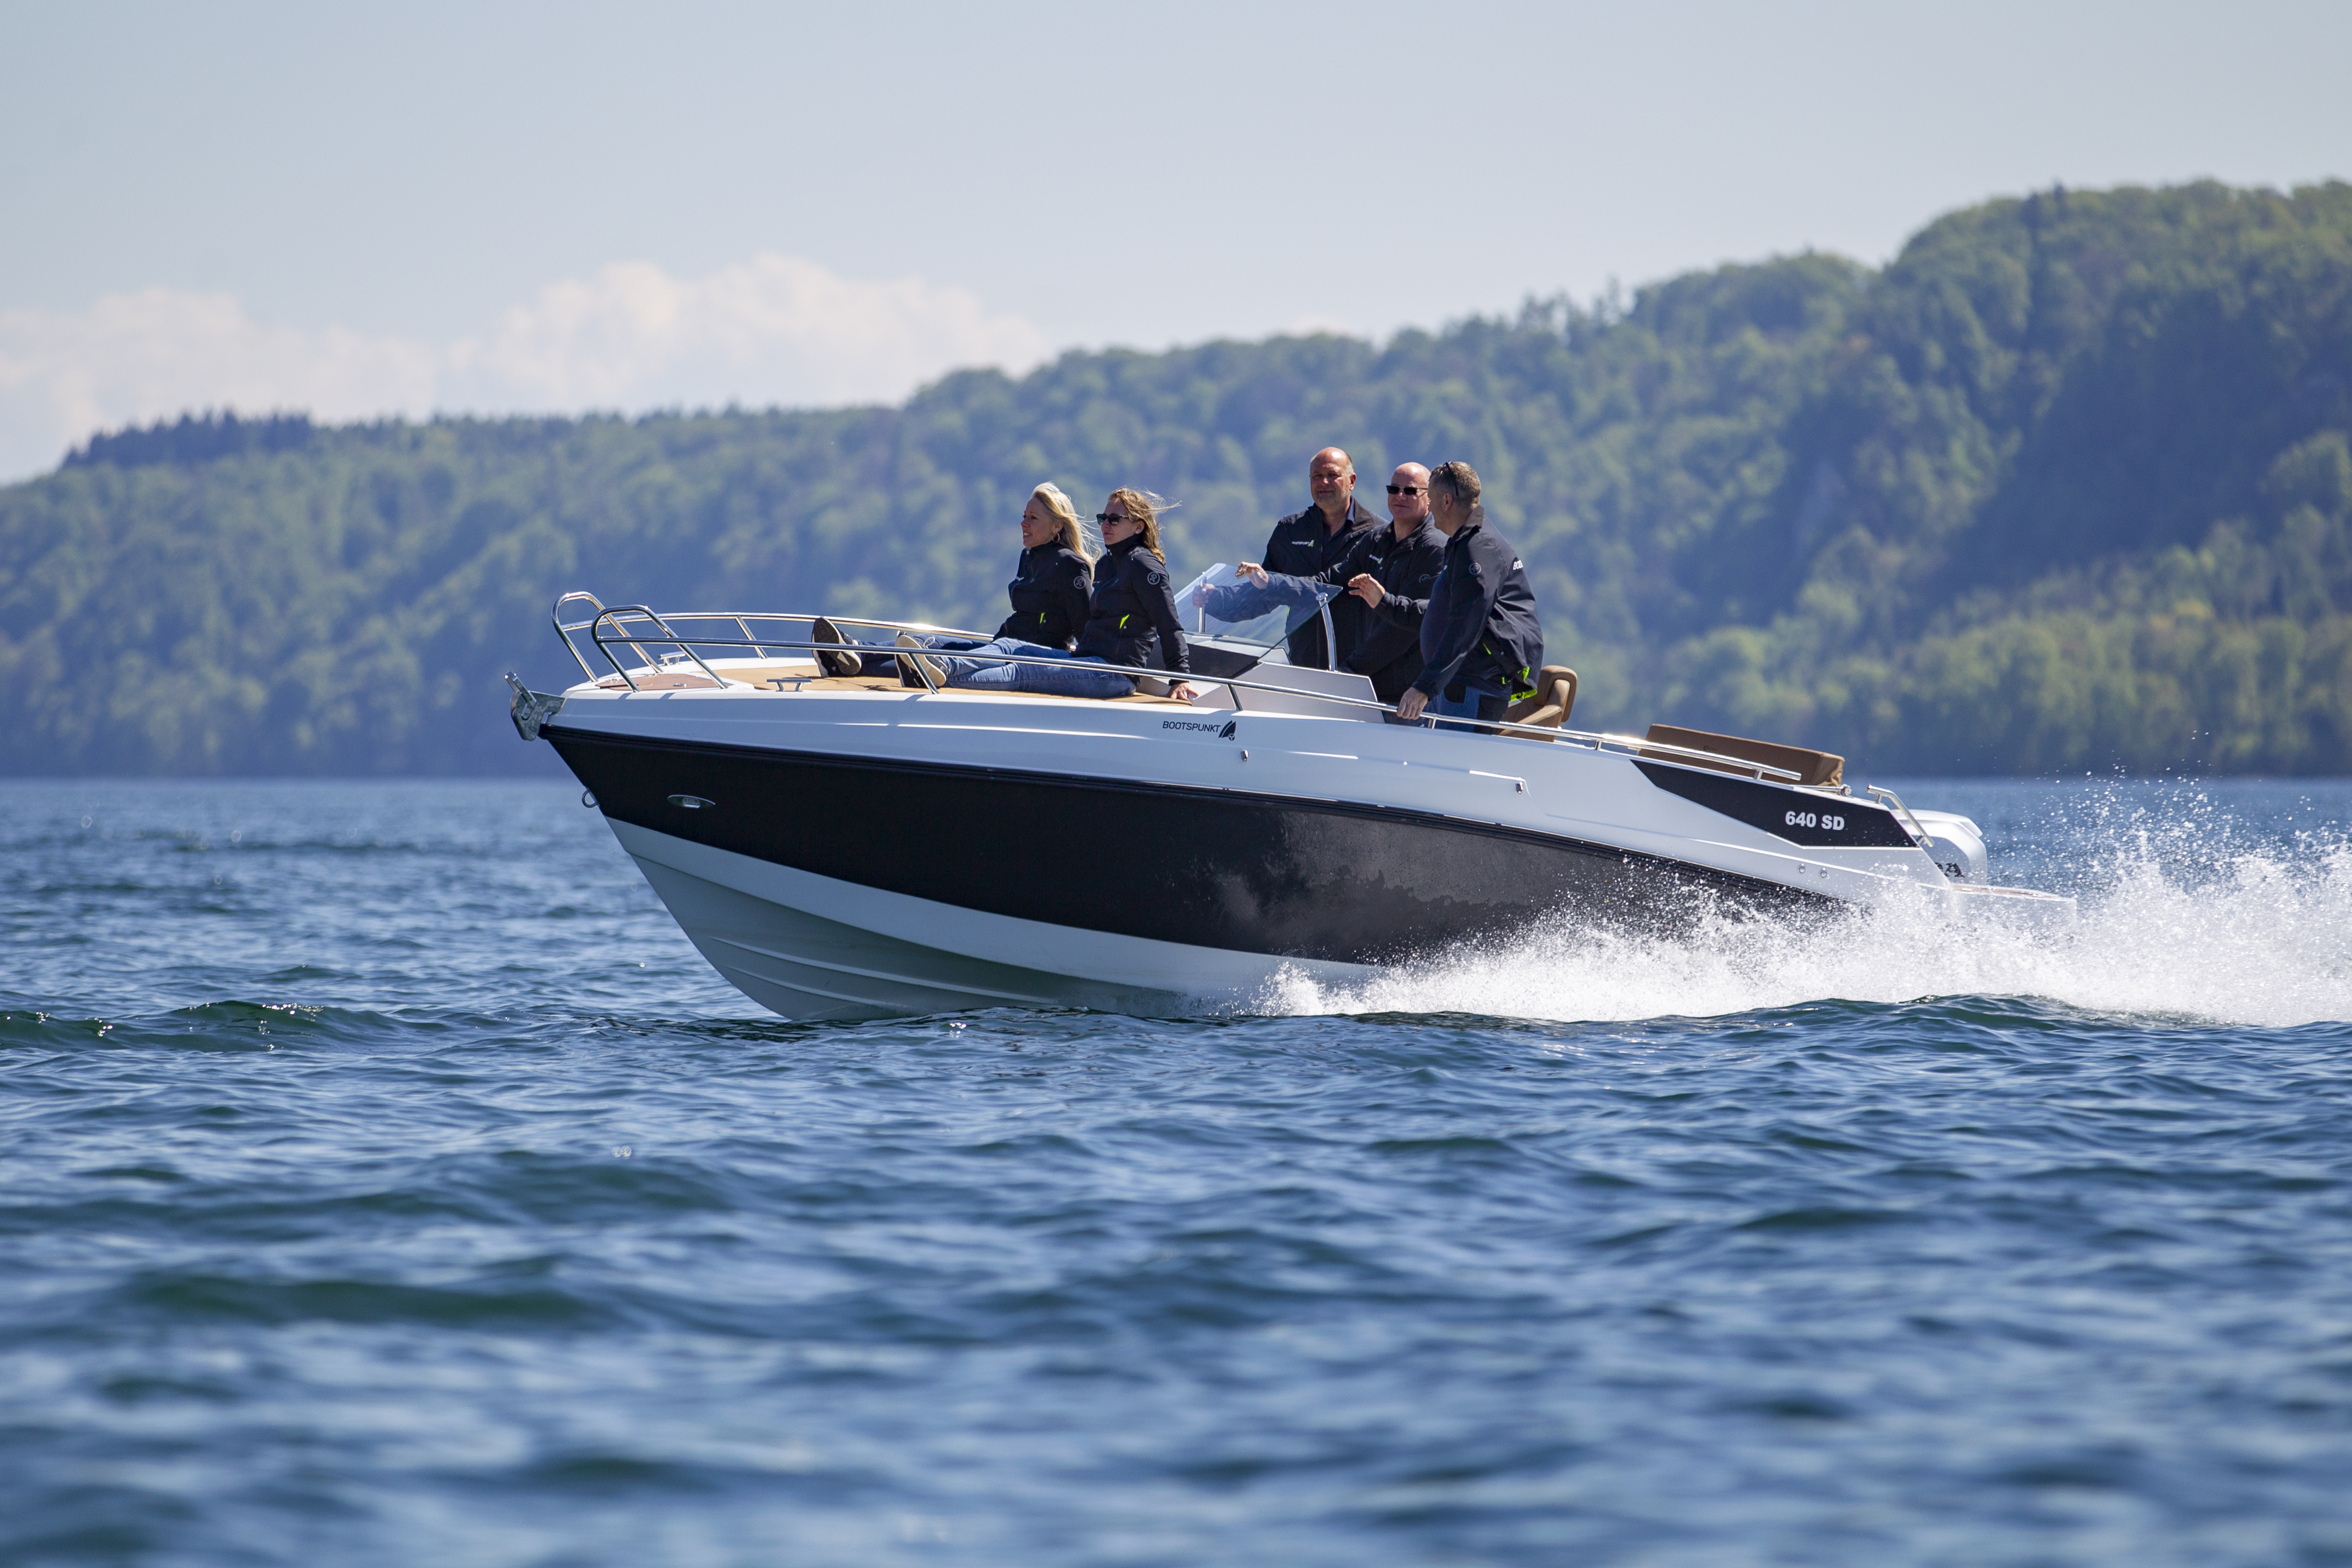 Vermietung Motorboot Coaster 640 (6,40m x 2,50 mit Kabine) für Tagestouren oder Wochenende - 1 Tag